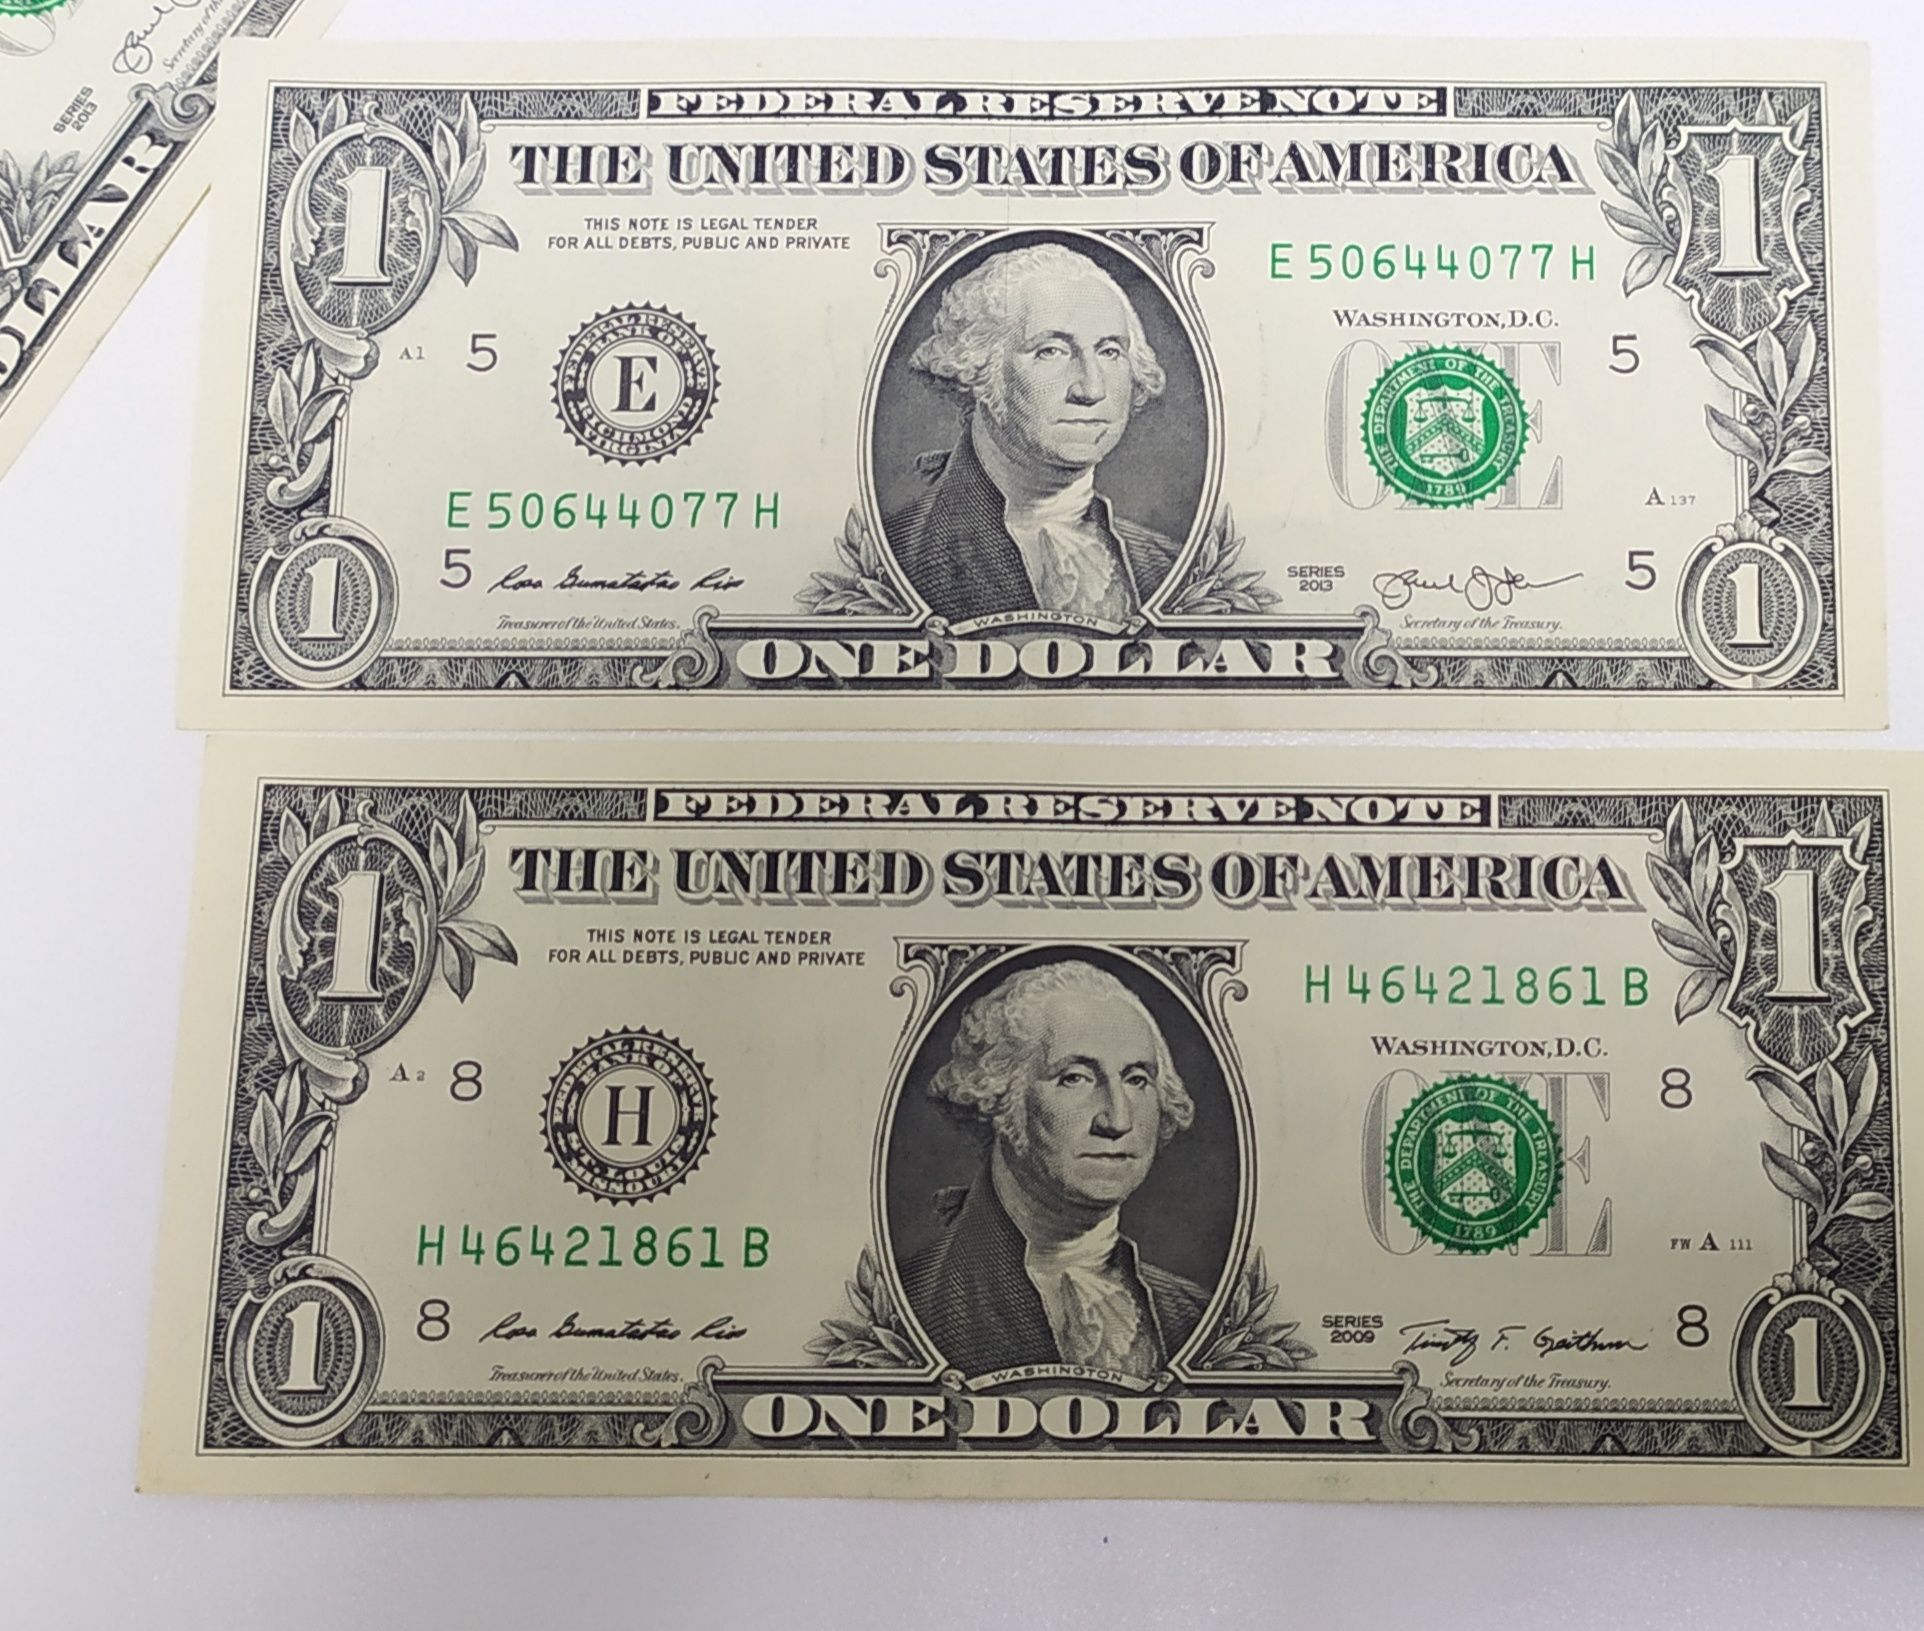 1 и 2 доллара банкноты разные  года